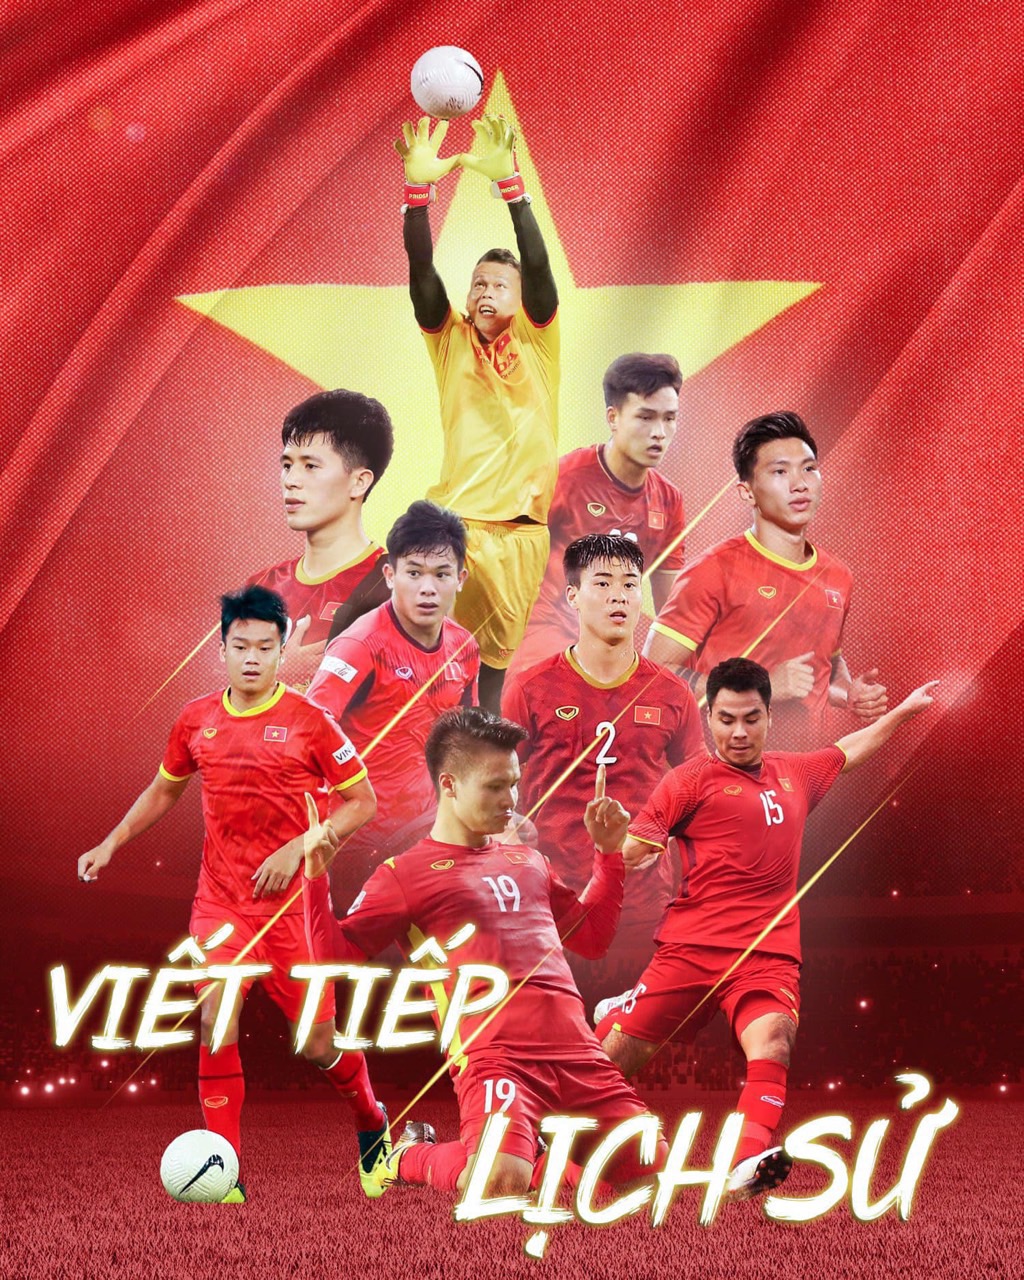 Mua Tranh ảnh poster treo đội tuyển bóng đá Việt Nam 3-6 tấm a4 khác nhau -  3 tấm a4 tại MPPshop